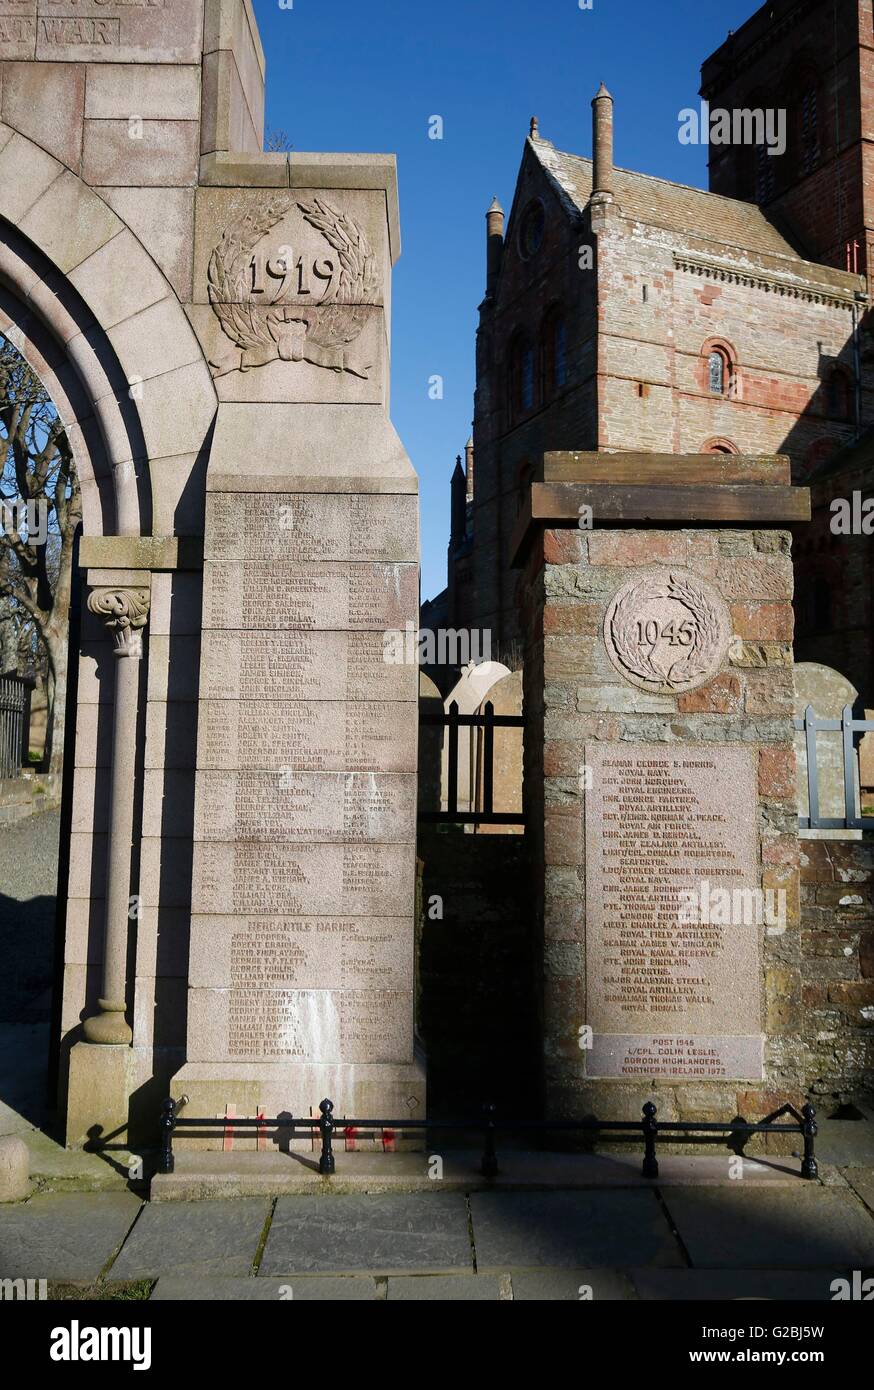 Noms sur des monuments commémoratifs de guerre à côté de St Magnus Cathedral, à Kirkwall, dans les Orcades, dans le cas où le service aura lieu la semaine prochaine pour commémorer le centenaire de la bataille du Jutland. Banque D'Images